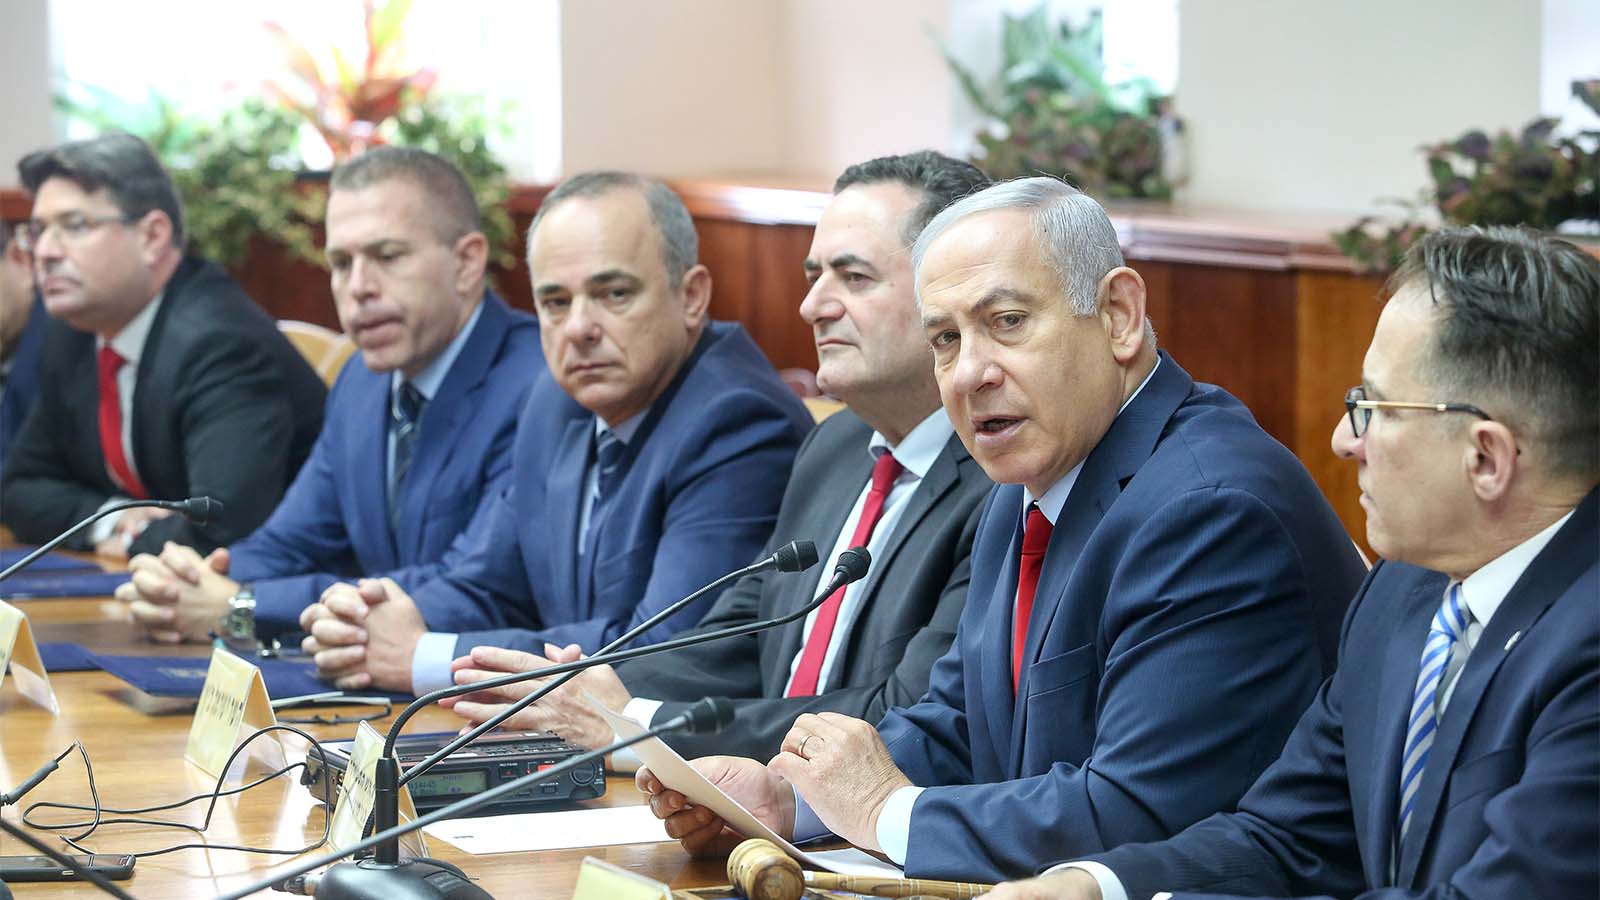 ראש הממשלה בנימין נתניהו בישיבת הממשלה, 9 דצמבר 2018 (צילום: מארק ישראל סלם / פלאש 90).